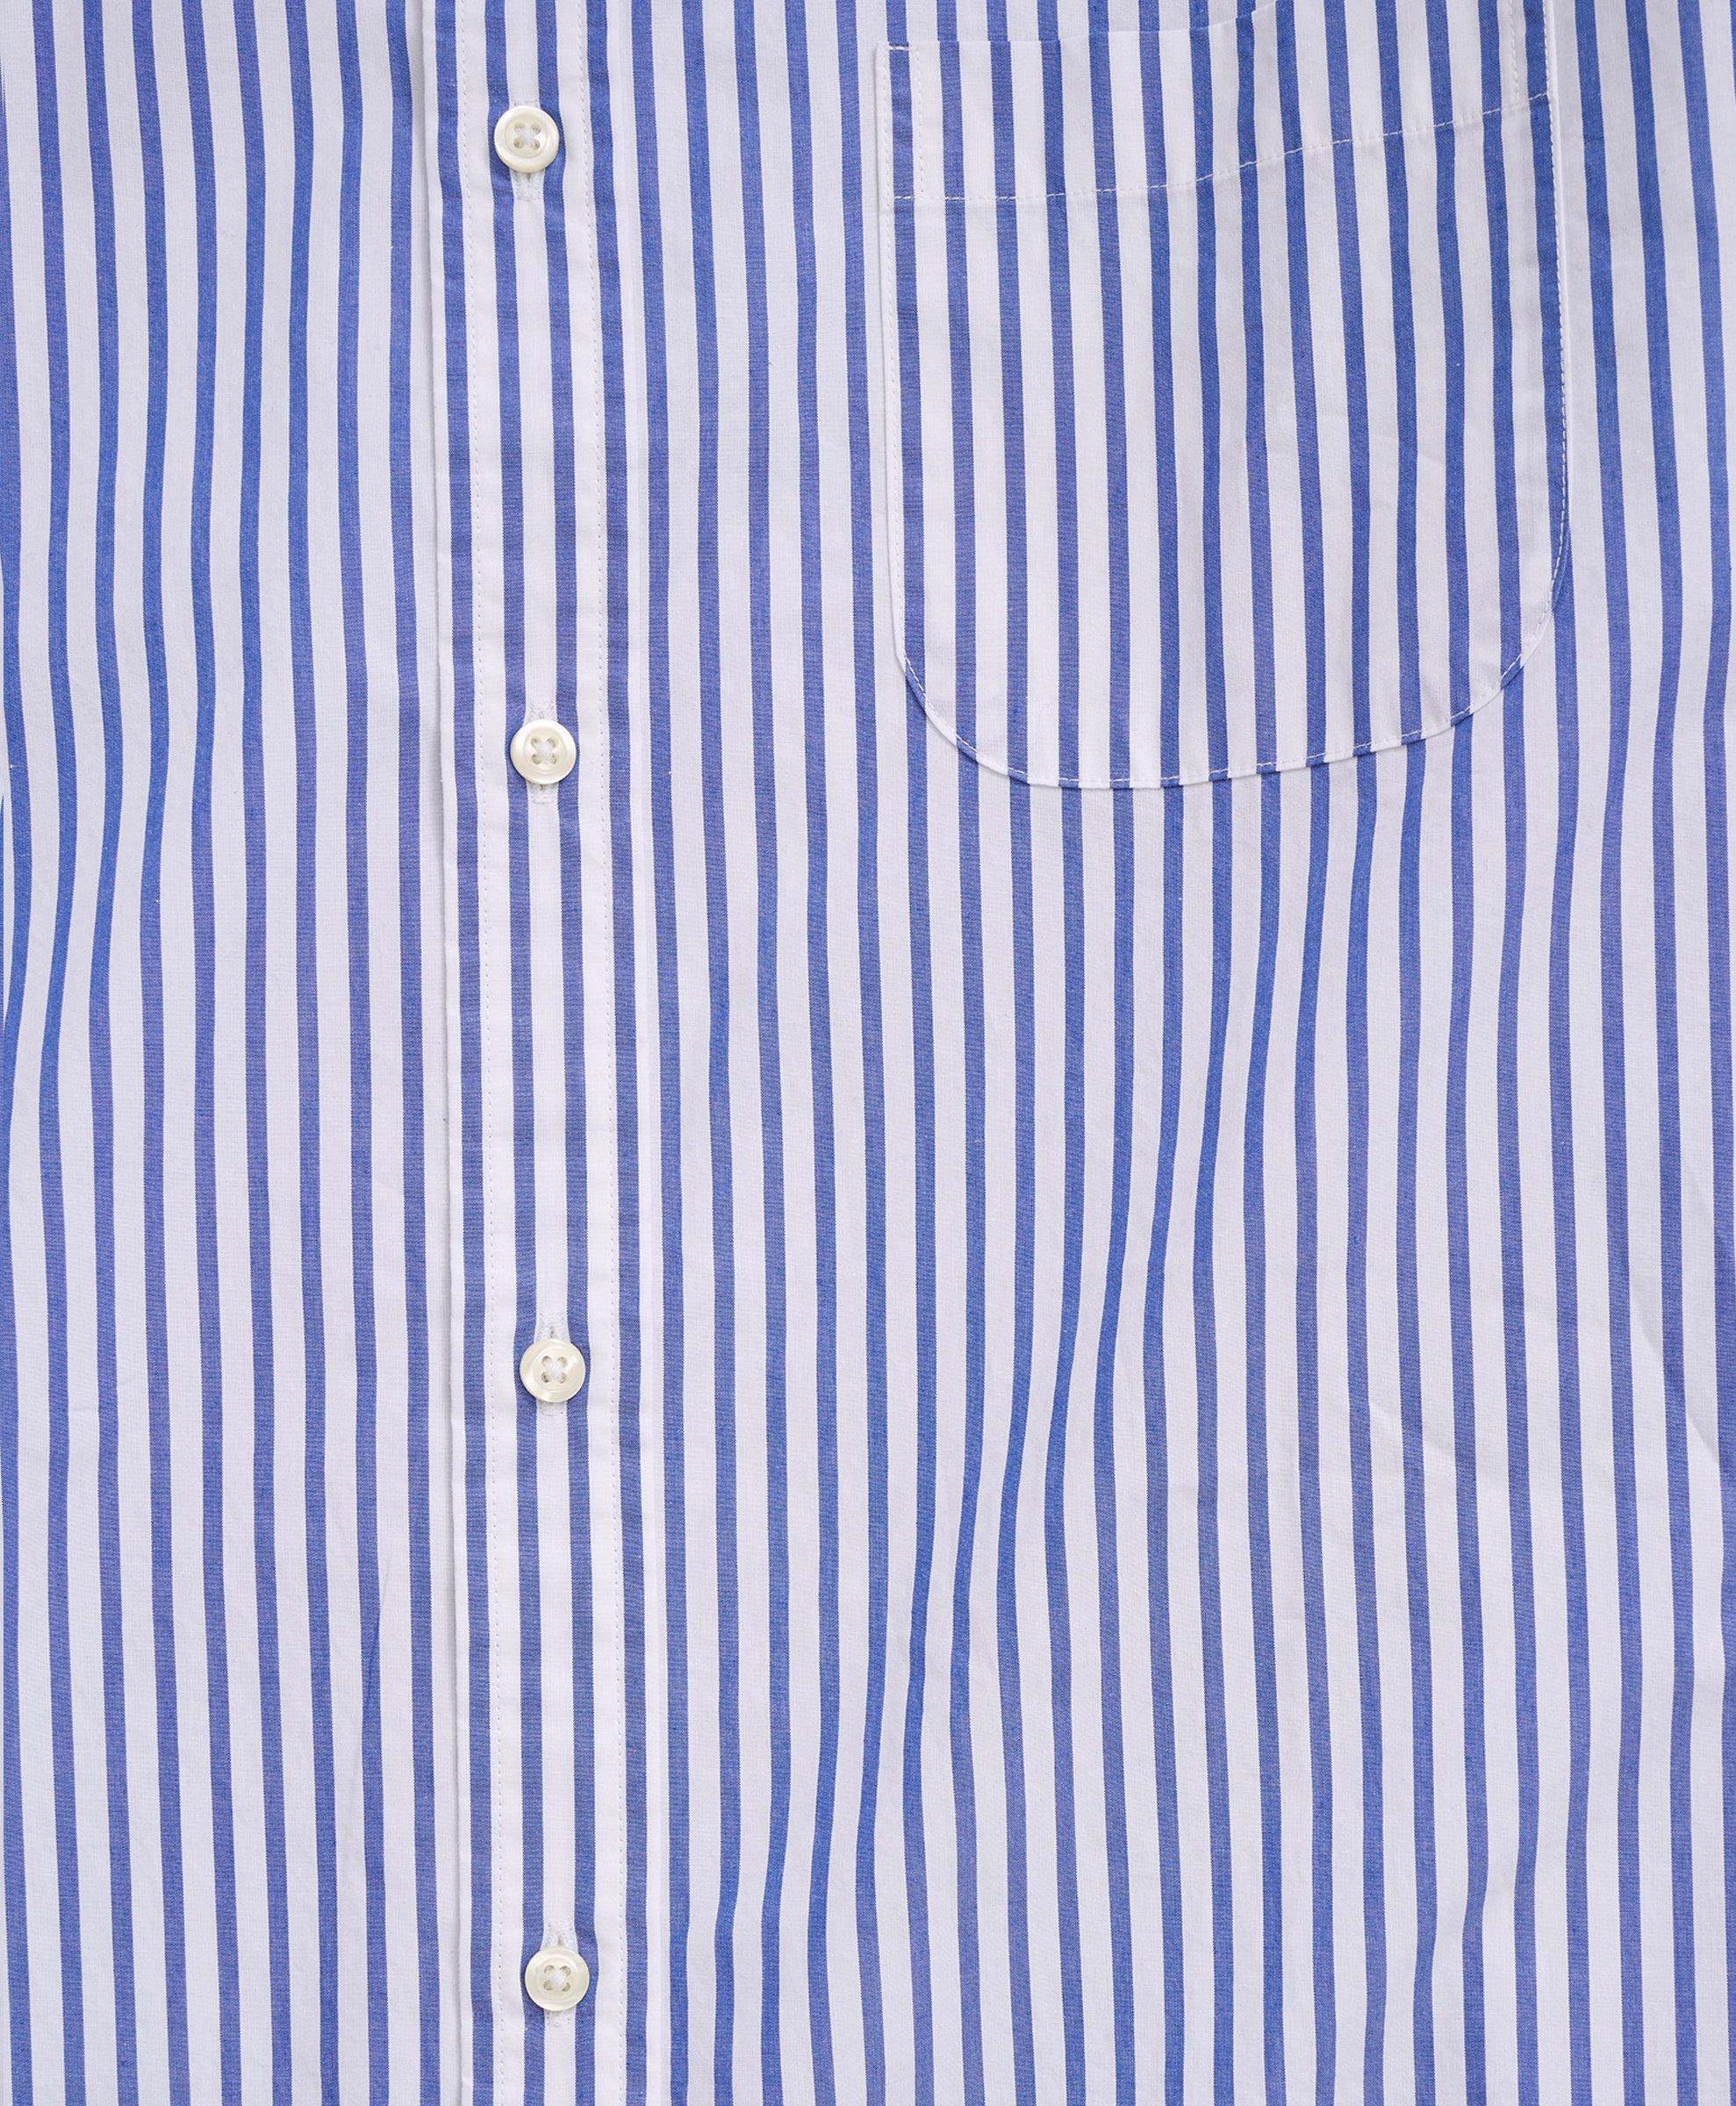 Big & Tall Friday Shirt, Poplin Bengal Stripe